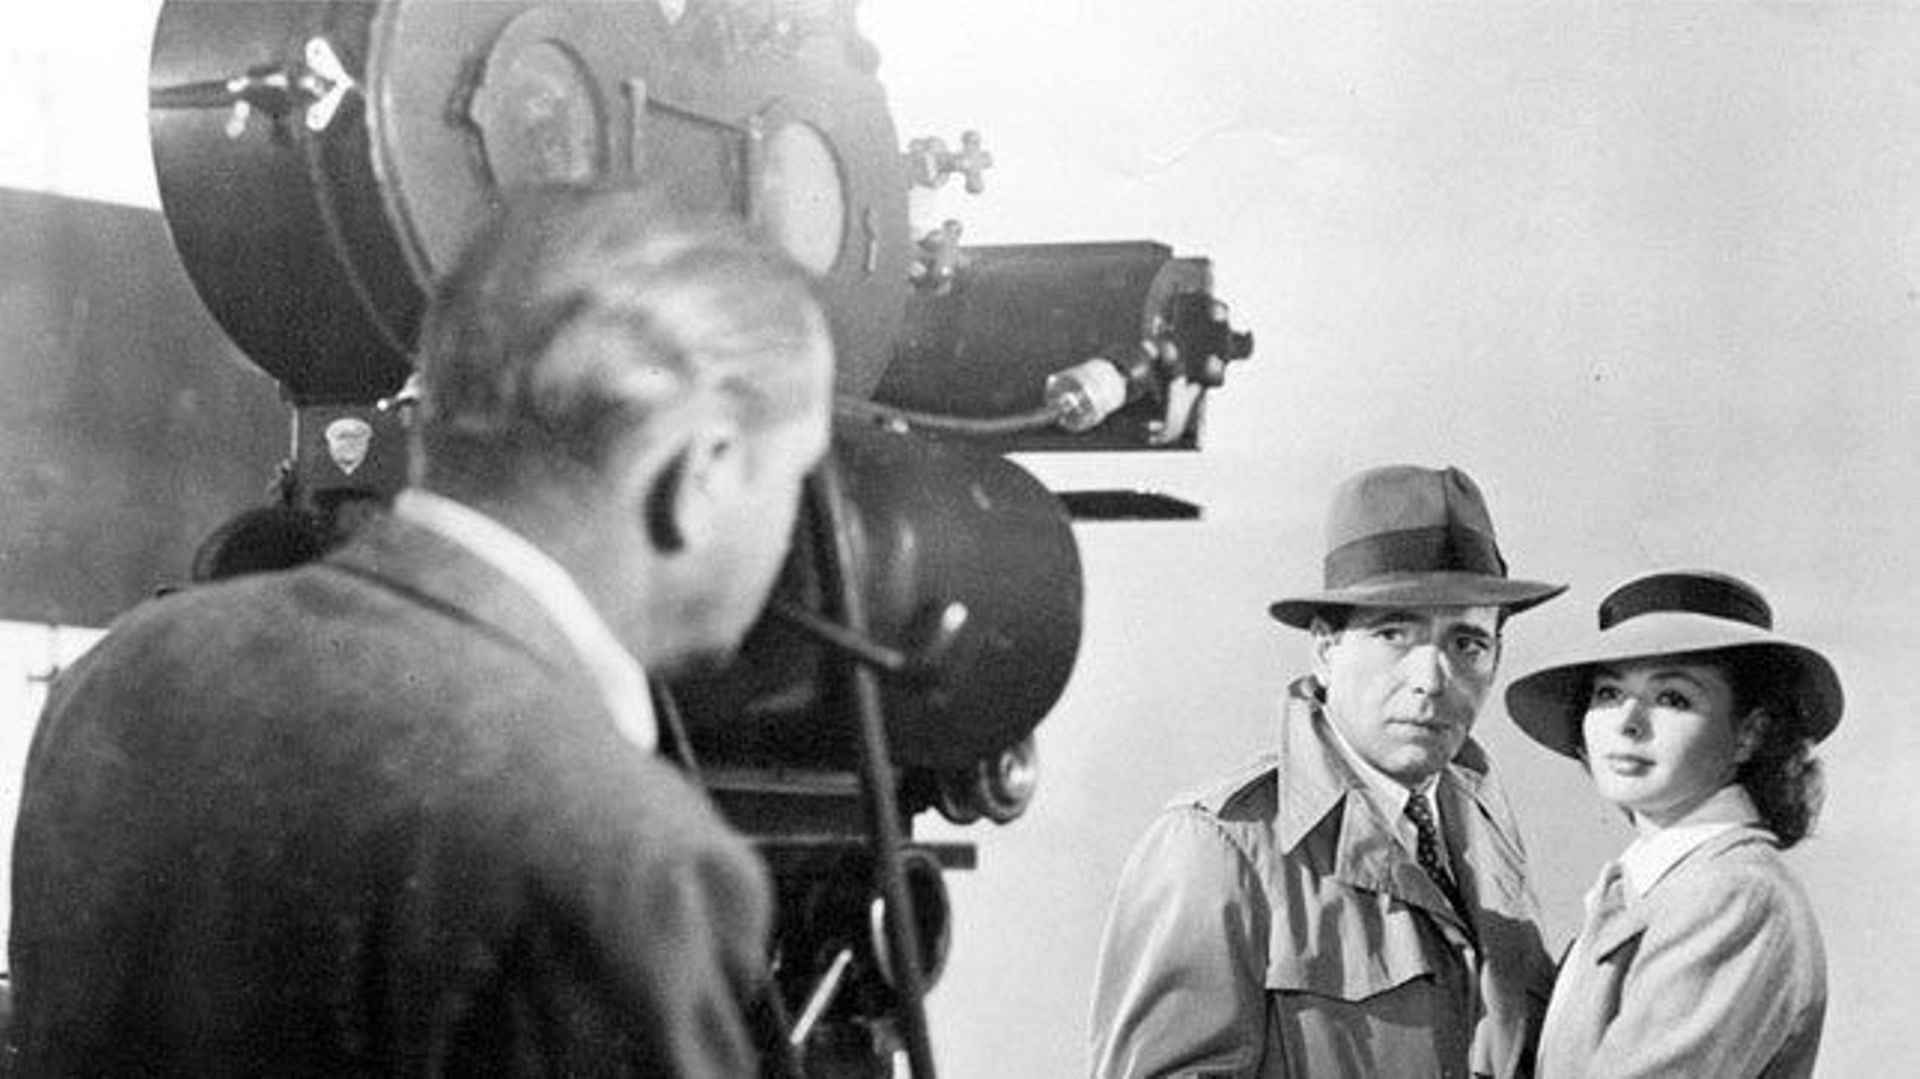 Sur le tournage de "Casablanca"